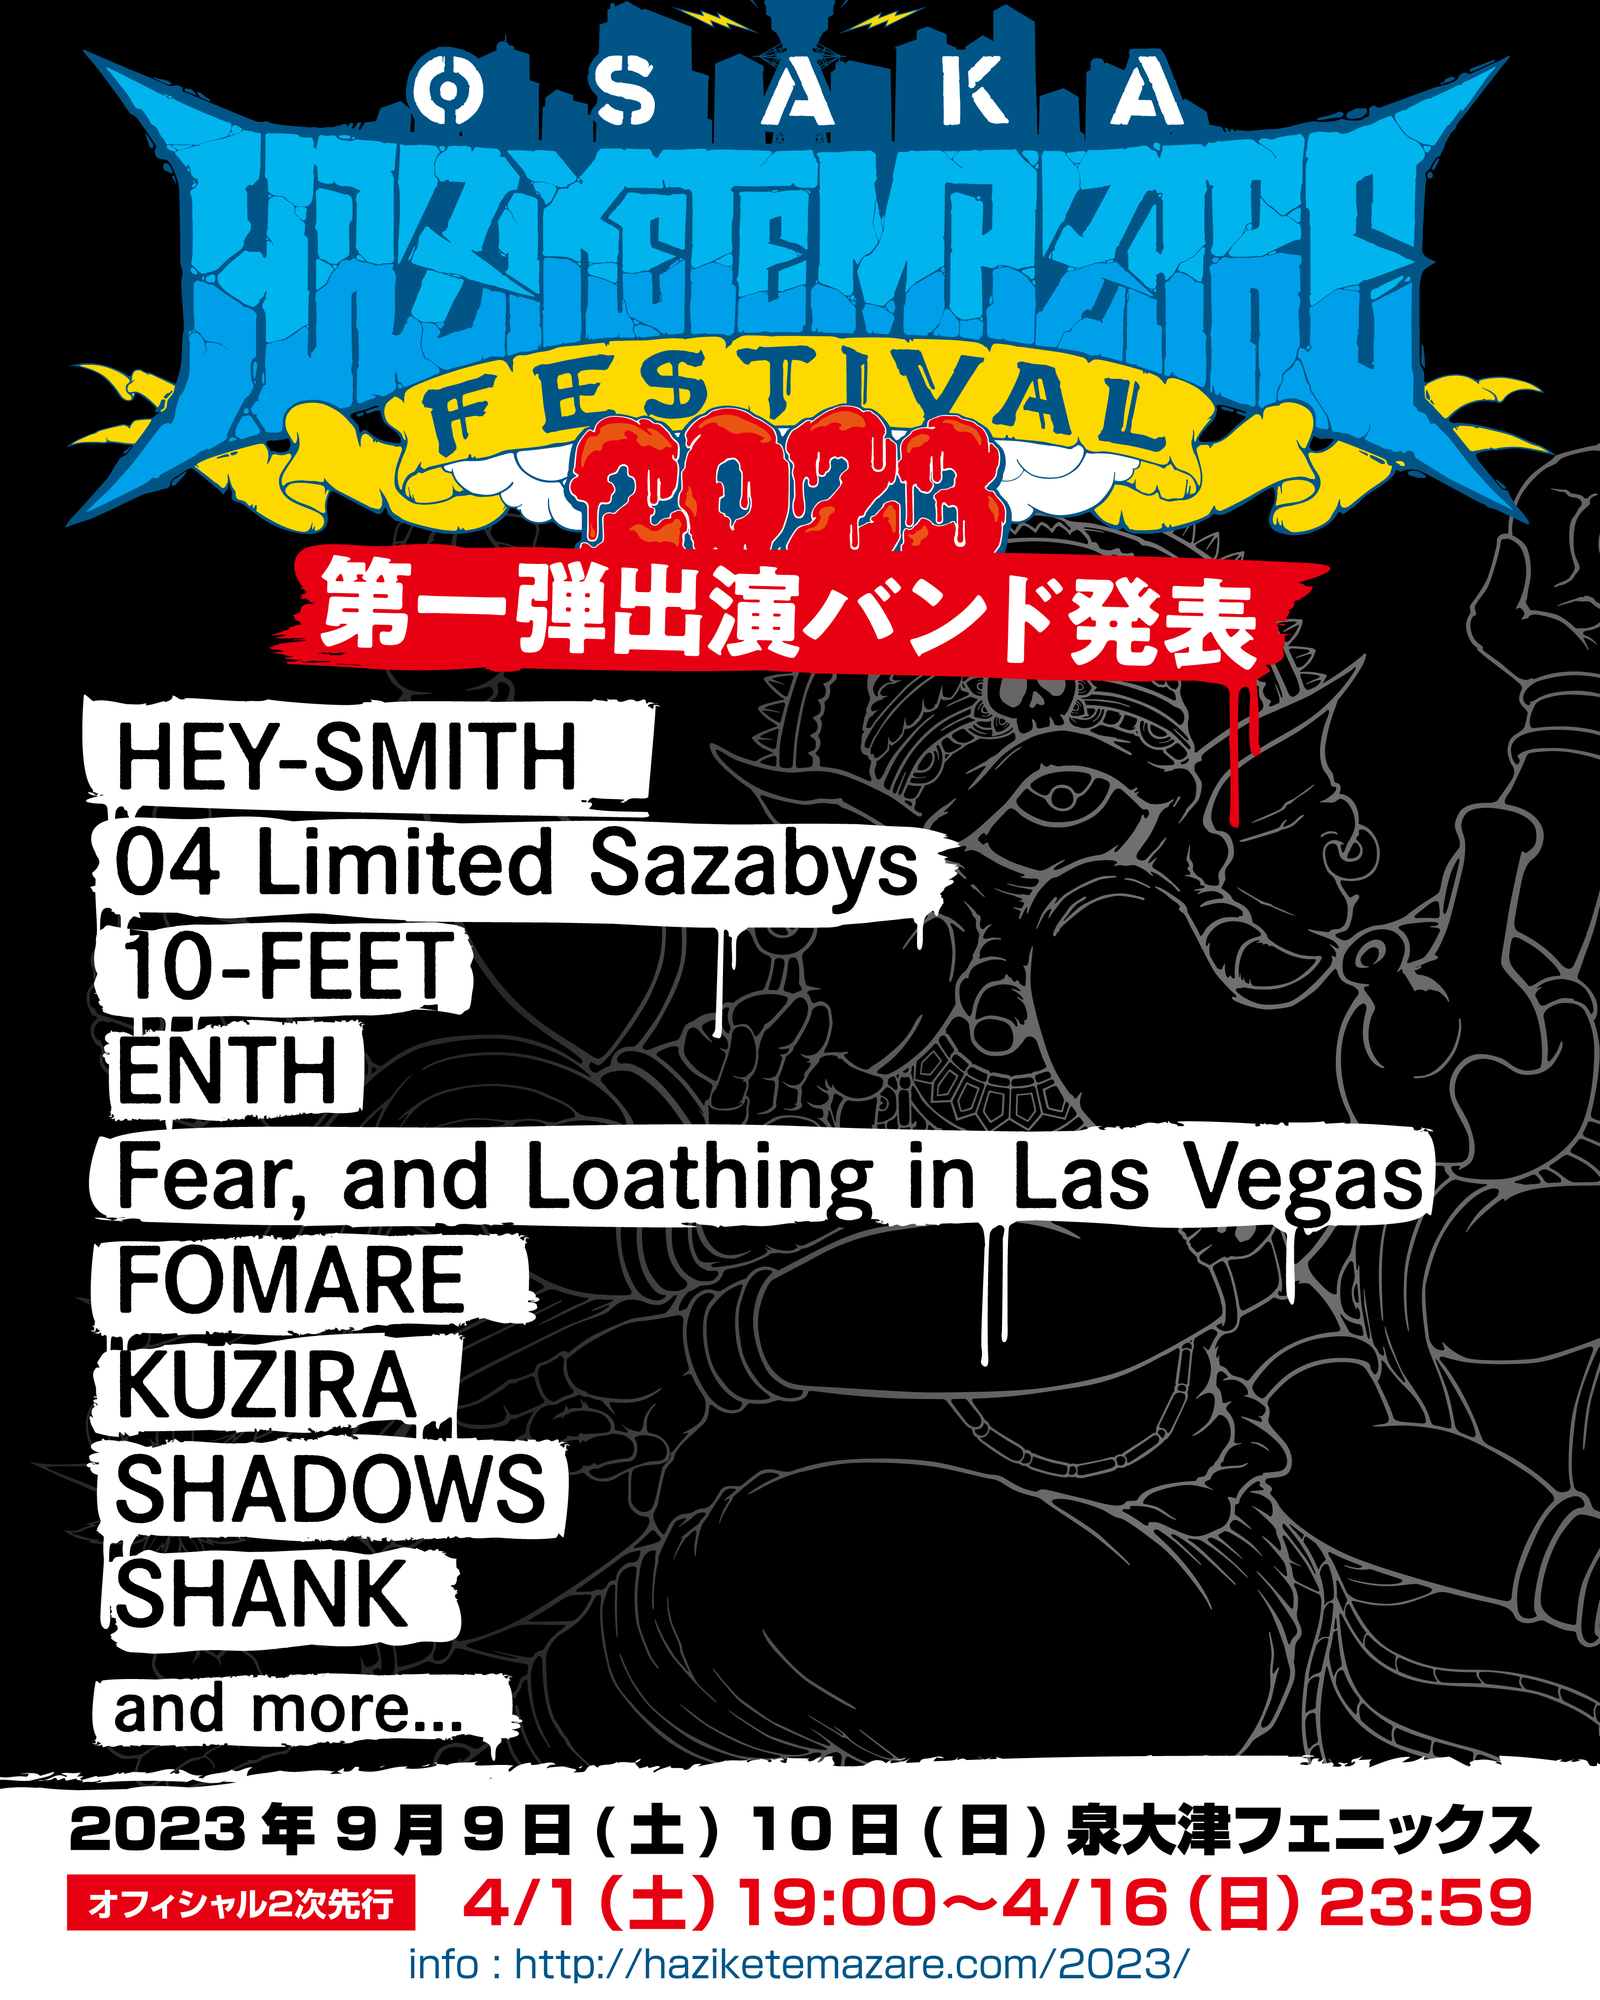 9.10(日) HEY-SMITH Presents OSAKA HAZIKETEMAZARE FESTIVAL